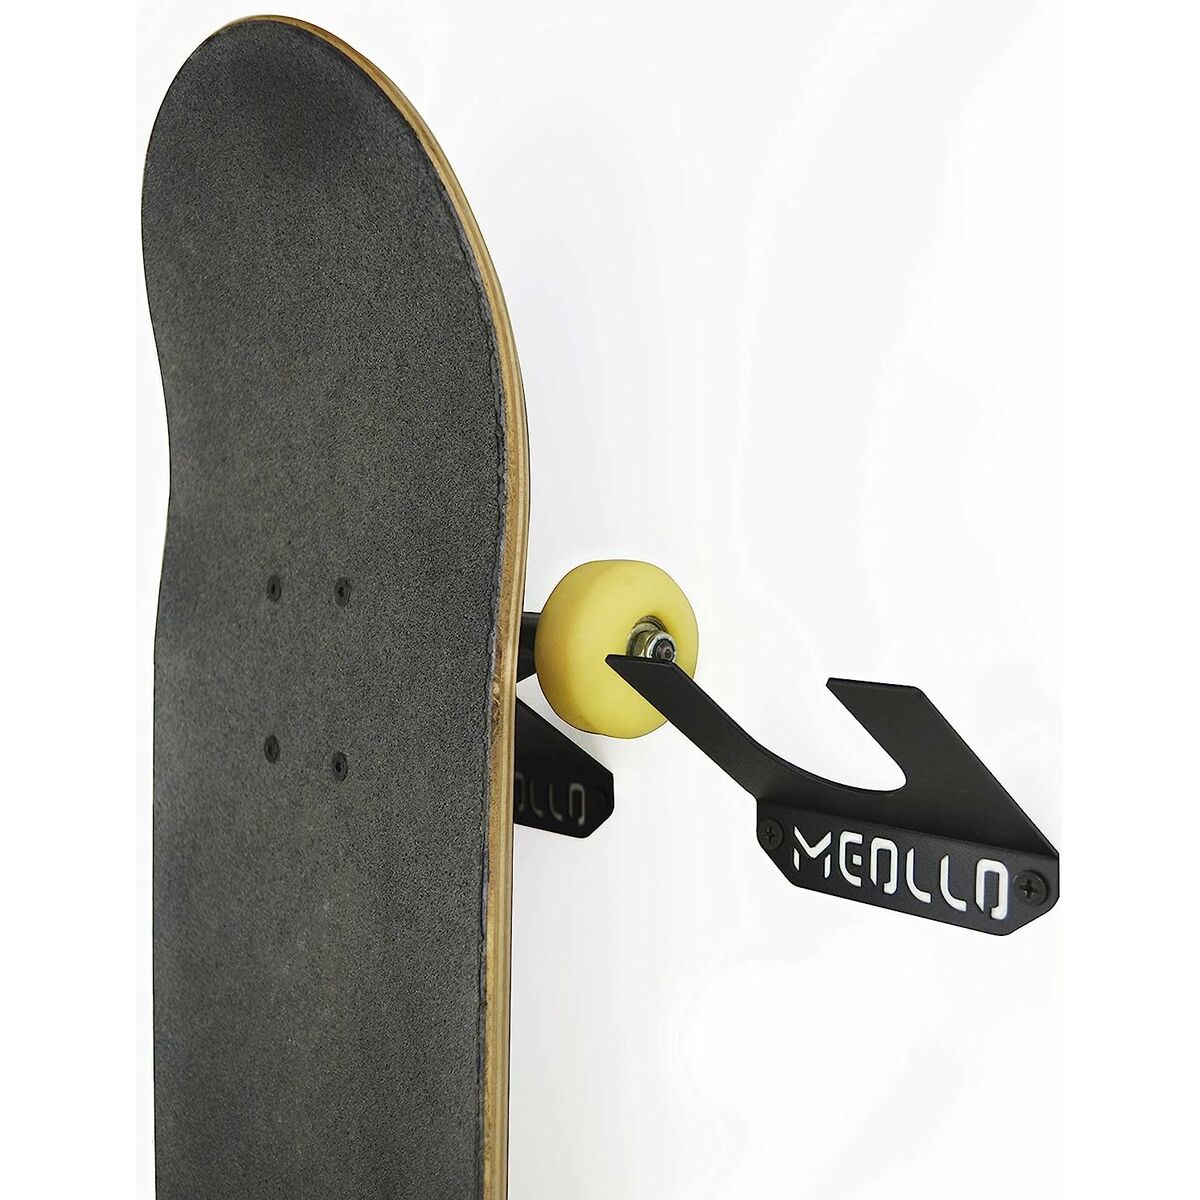 Soporte De Pared Para Skateboard Meollo 10 X 10 X 2 Cm (1 Unidad) - Soporte De Pared Para Skateboard  MKP